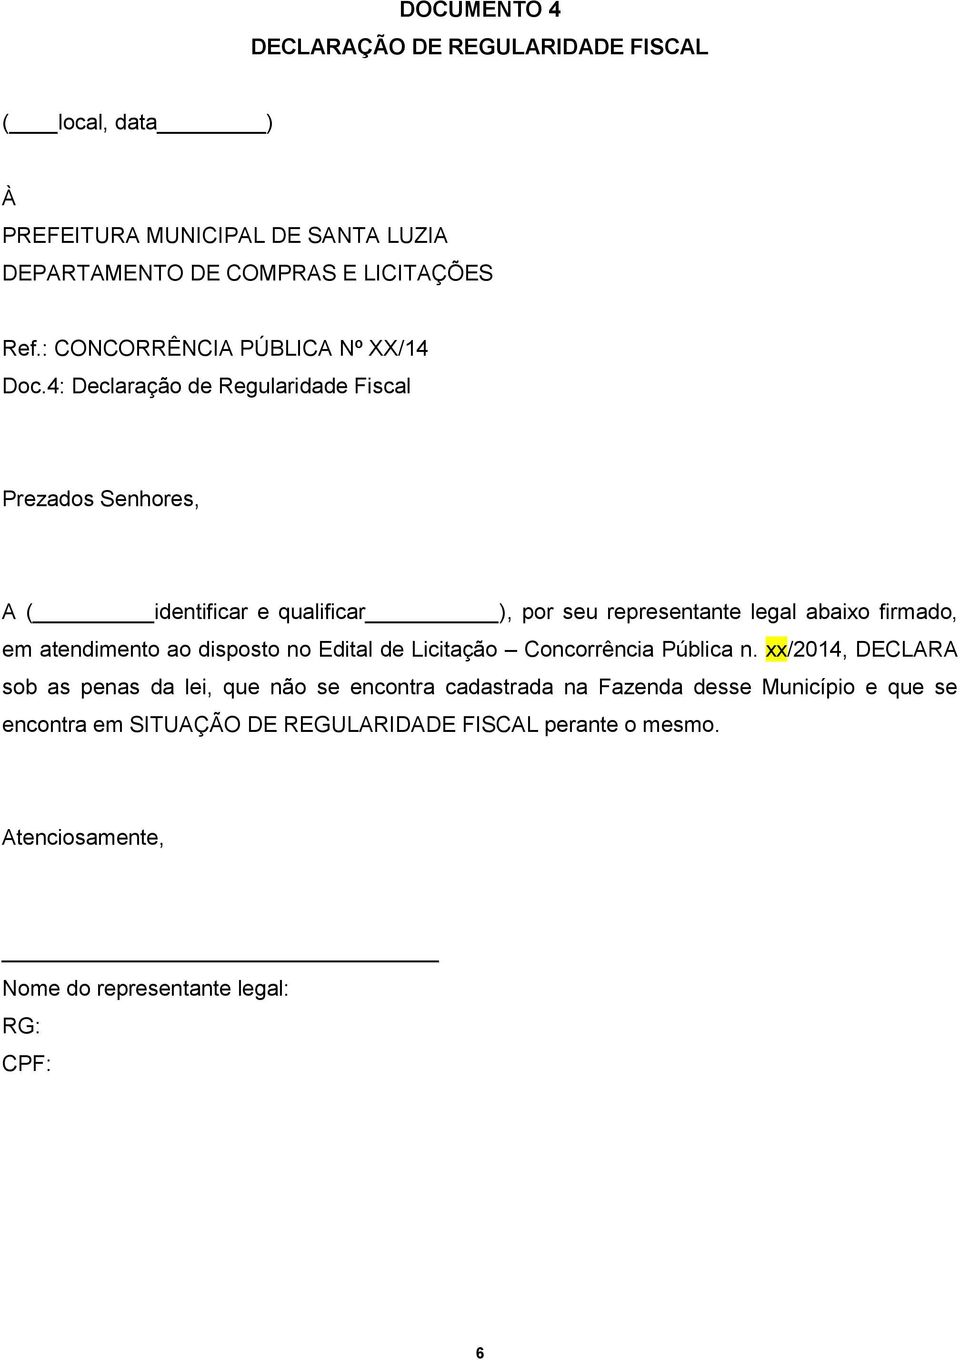 legal abaixo firmado, em atendimento ao disposto no Edital de Licitação Concorrência Pública n.